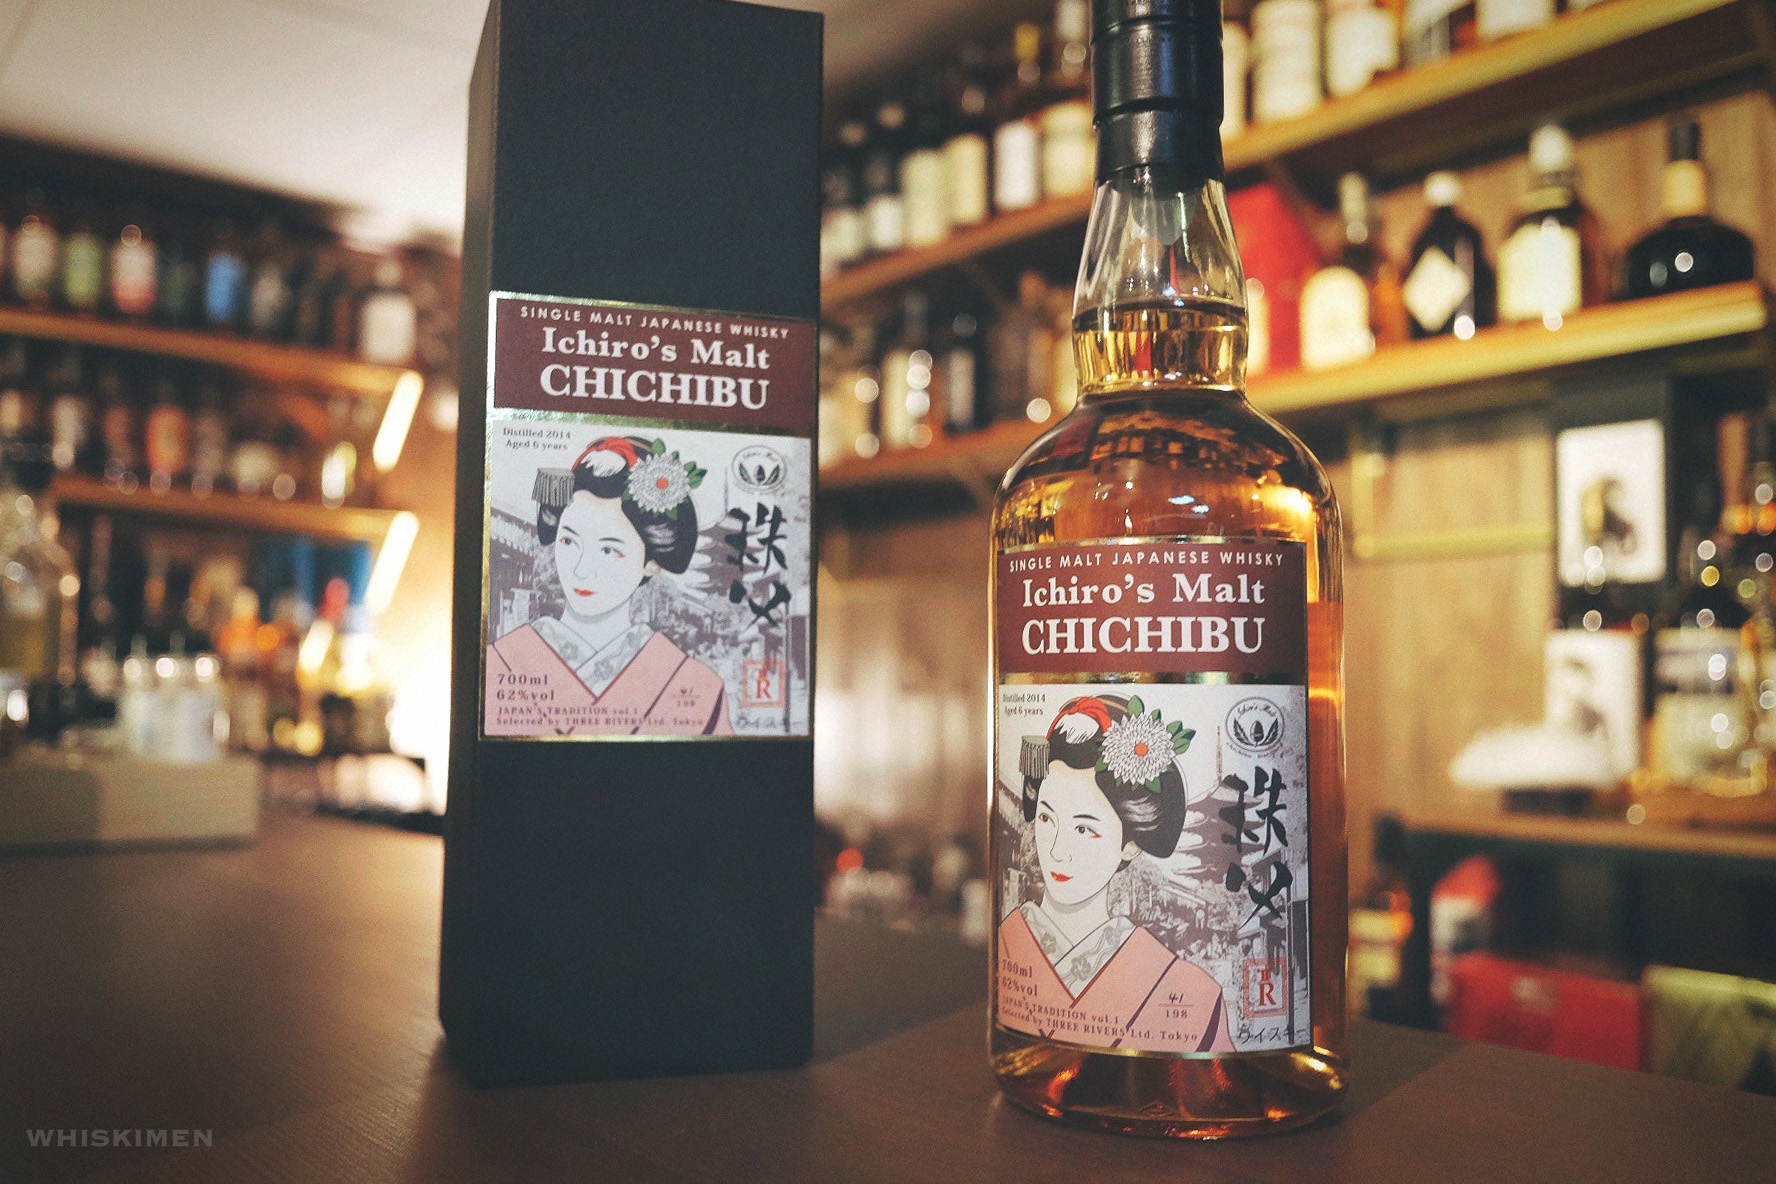 秩父 Chichibu Ichiro's Malt 2014 6 Year Old Japan Tradition Vol.1 Japanese Single Malt Whisky